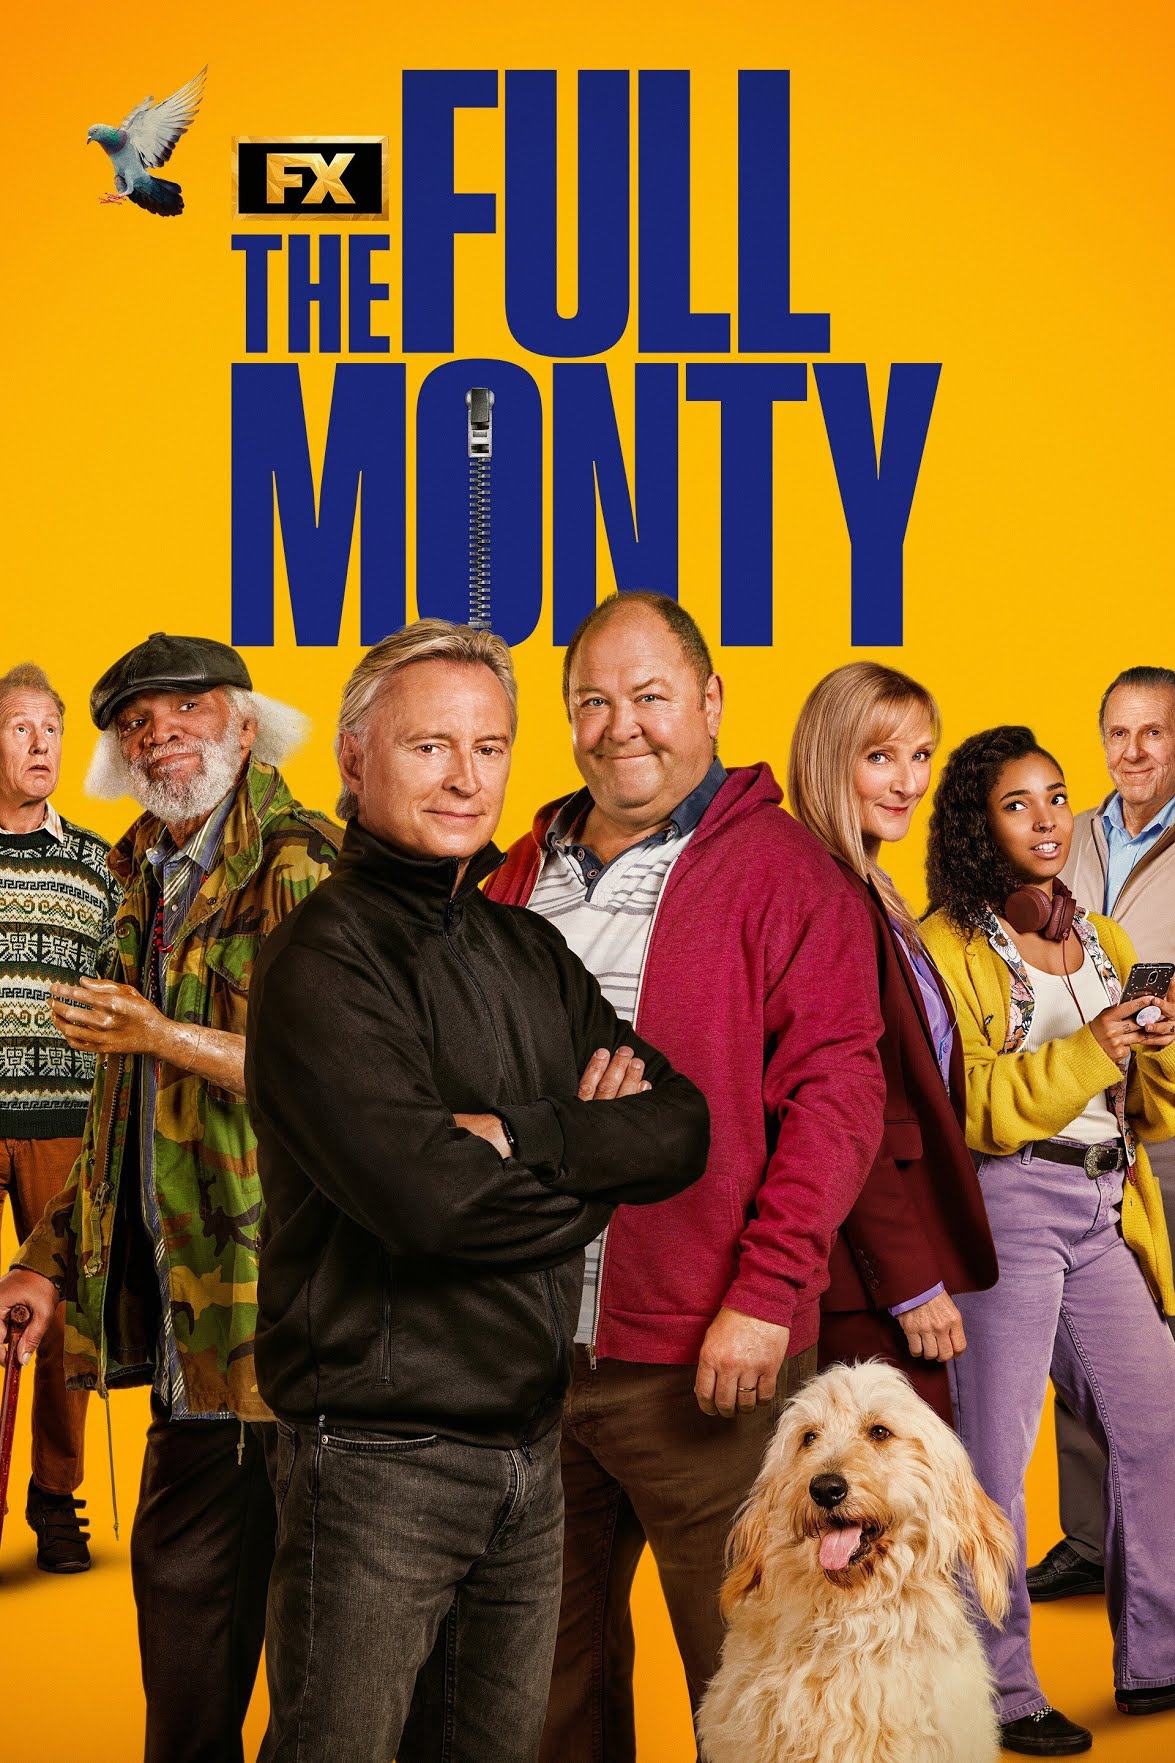 سریال اشتیاق کامل The Full Monty